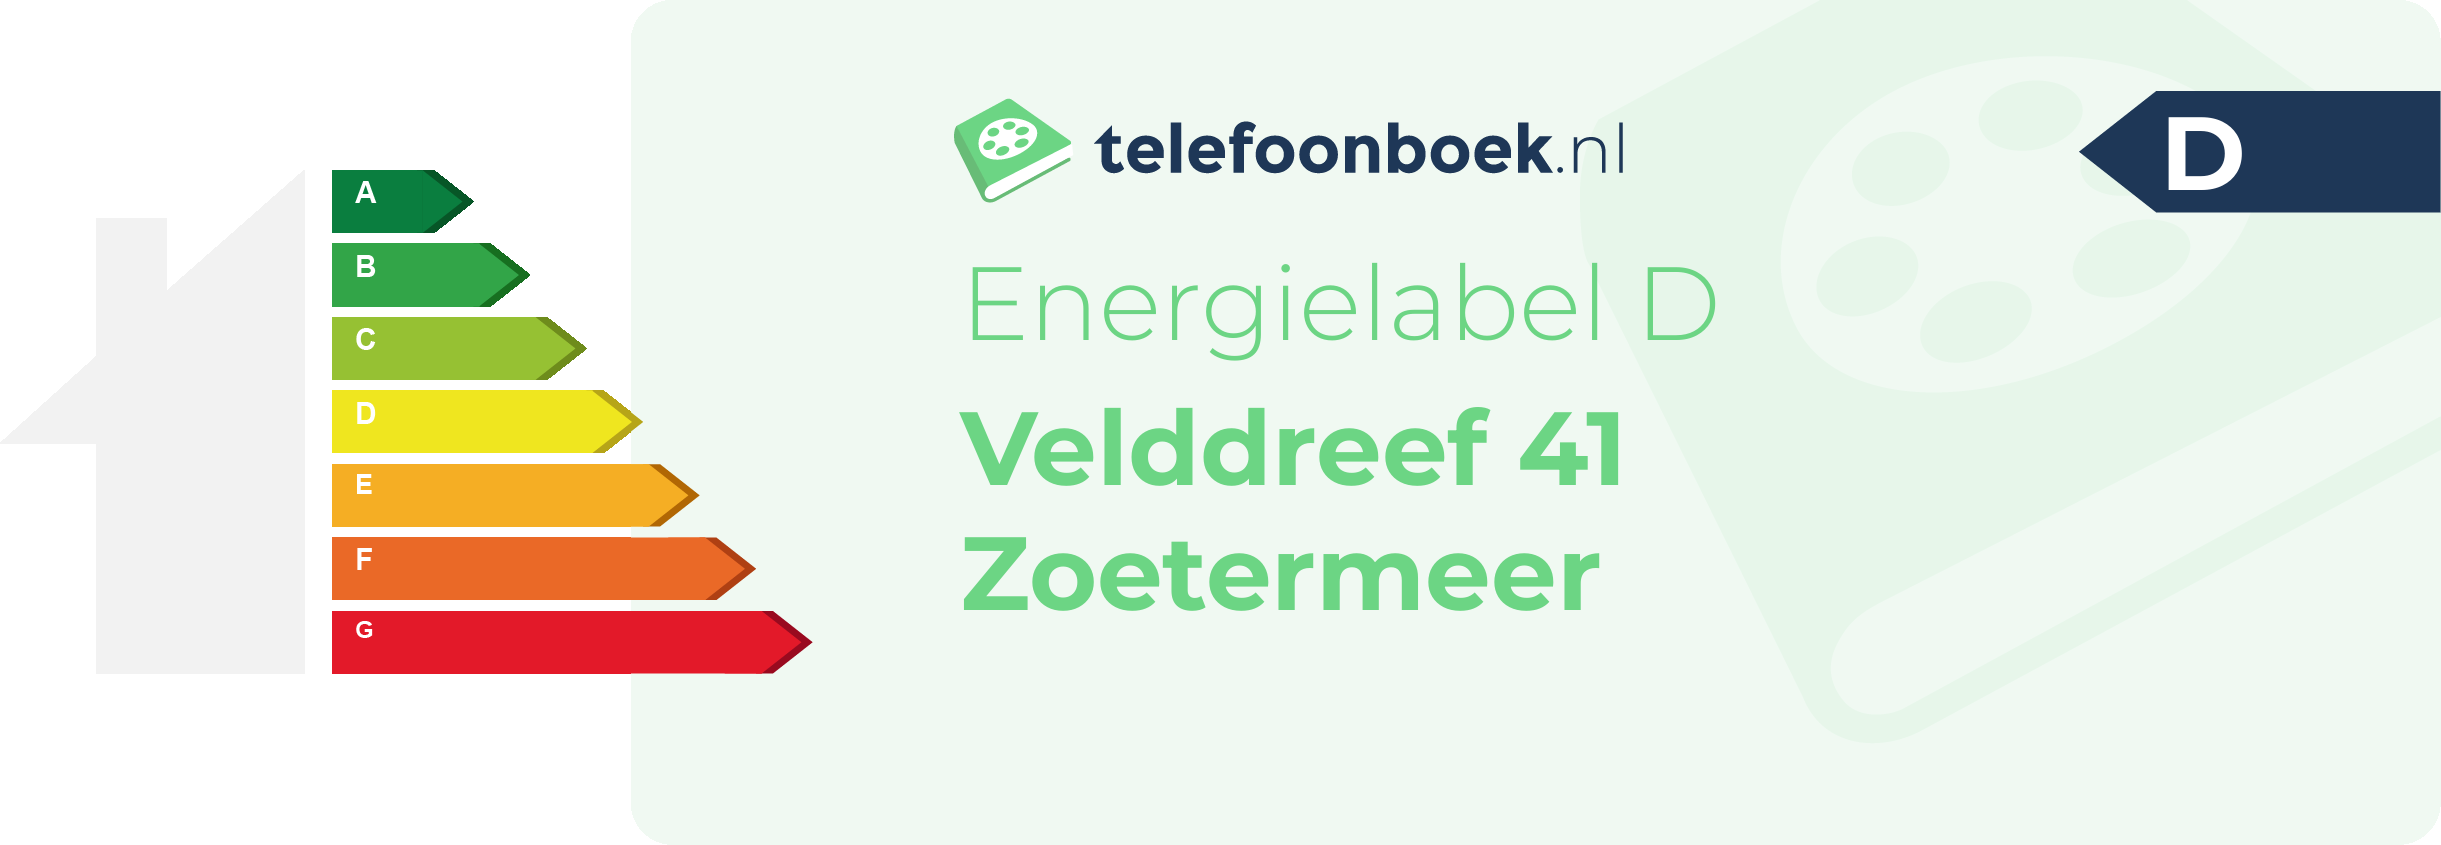 Energielabel Velddreef 41 Zoetermeer